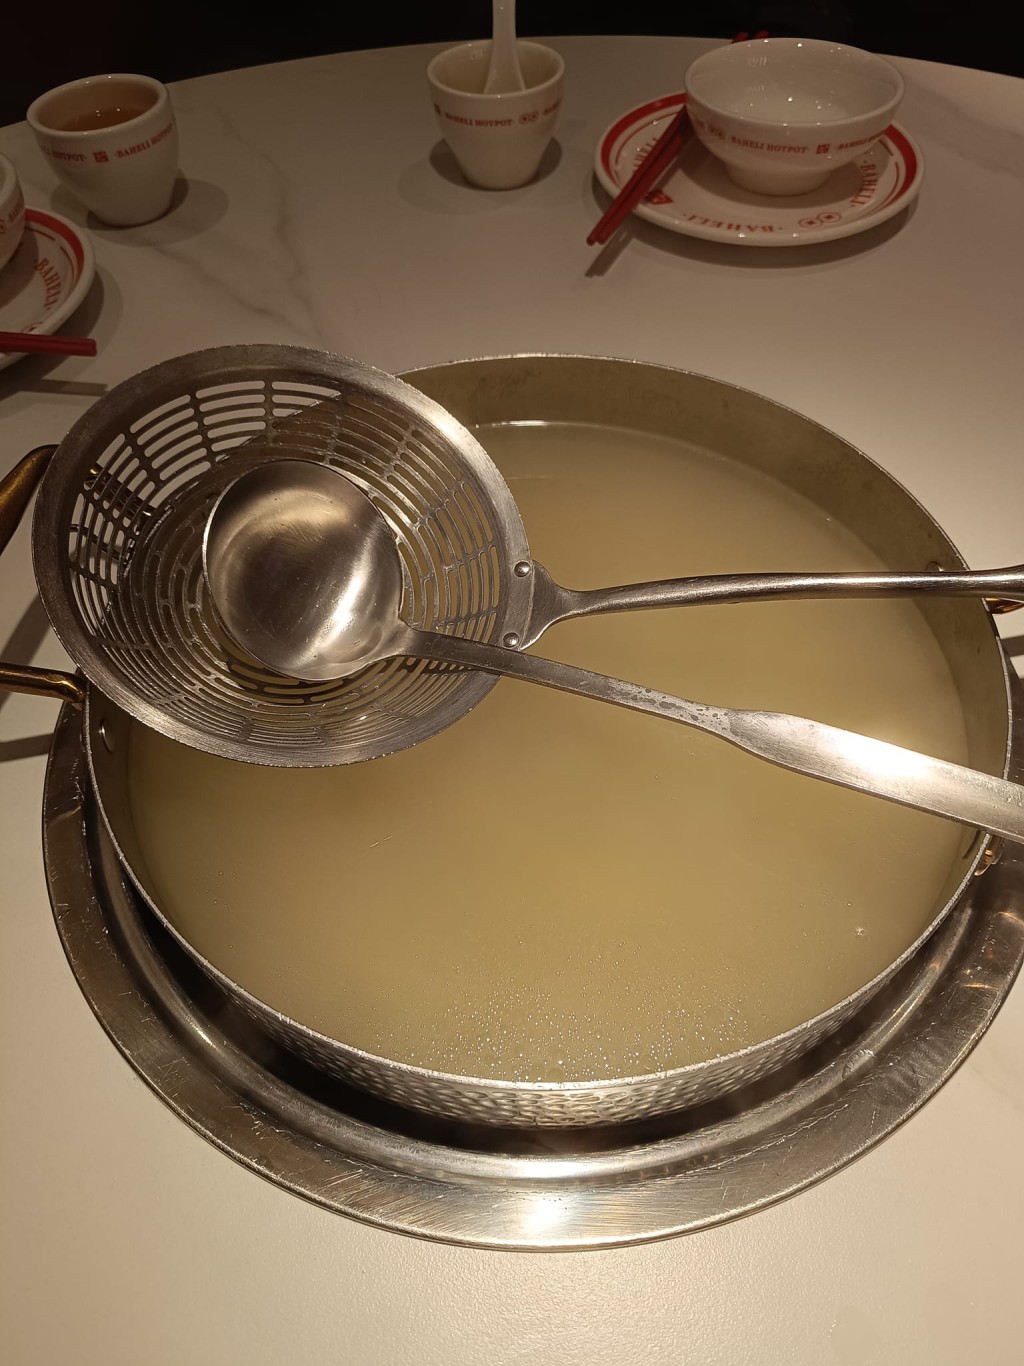 唯一挑剔是湯底不夠足料（圖片來源：Facebook@深圳美食遊玩交流分享區）